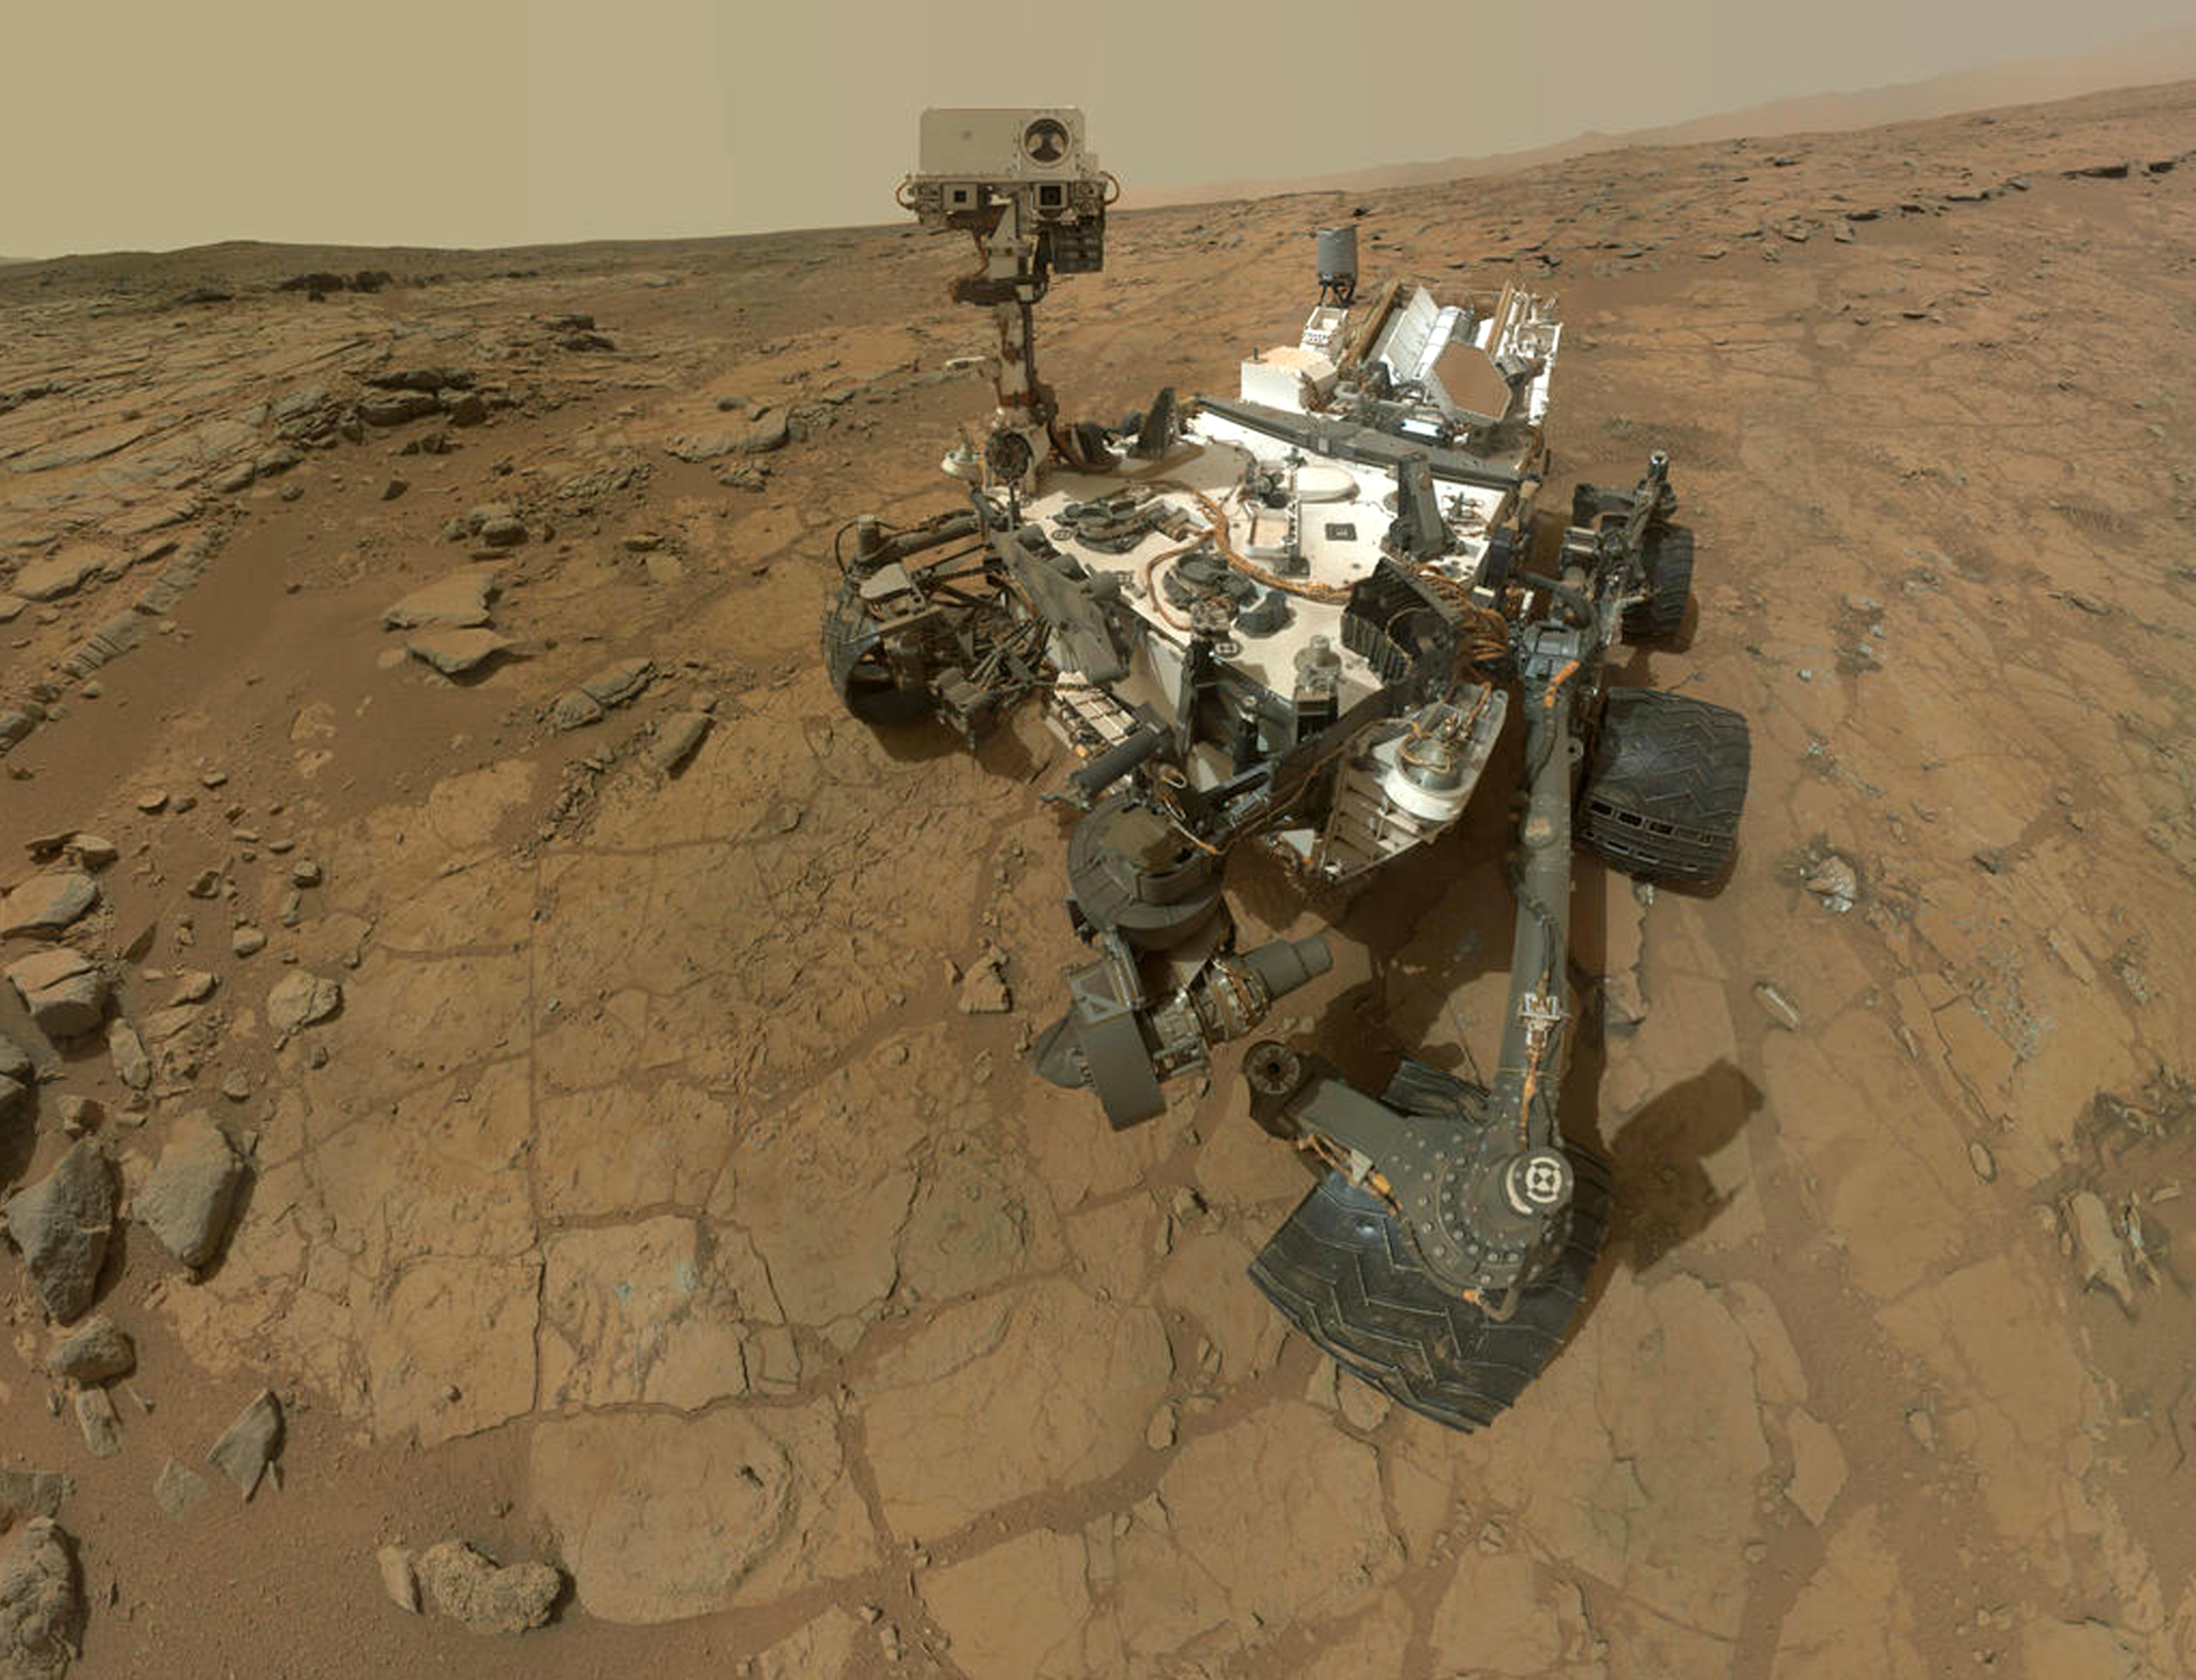 A Curiosity szelfije a első fúrási helyszínen, a John Klein nevű szikláknál, 2013. február 7-én